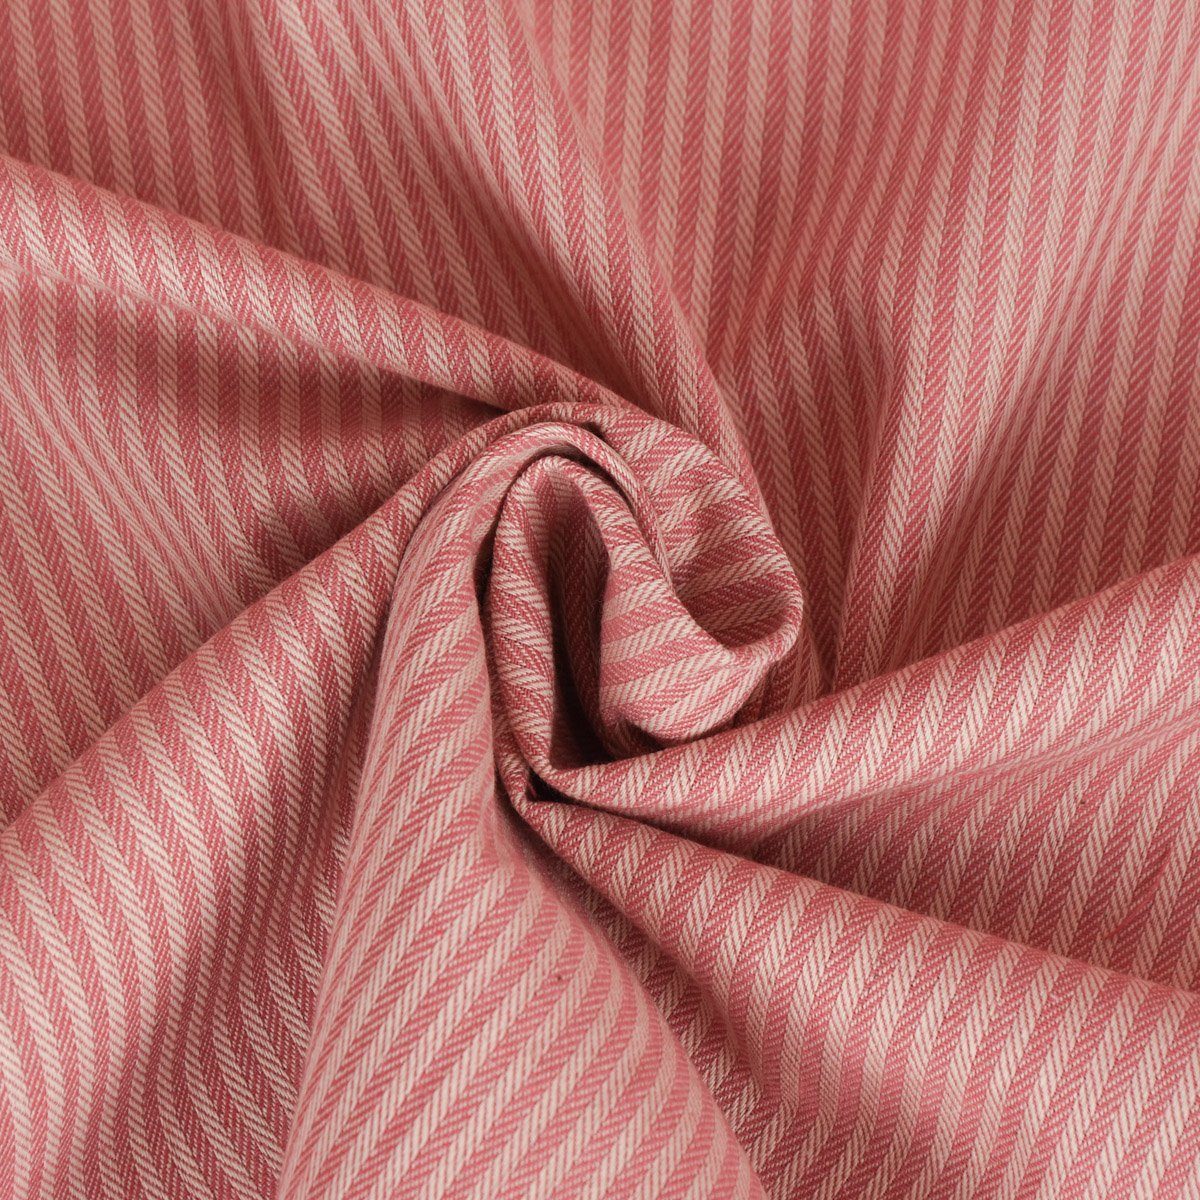 SCHÖNER LEBEN. Tischdecke SCHÖNER rosa handmade Tischdecke Größen, verschiedene 3mm creme LEBEN. Streifen